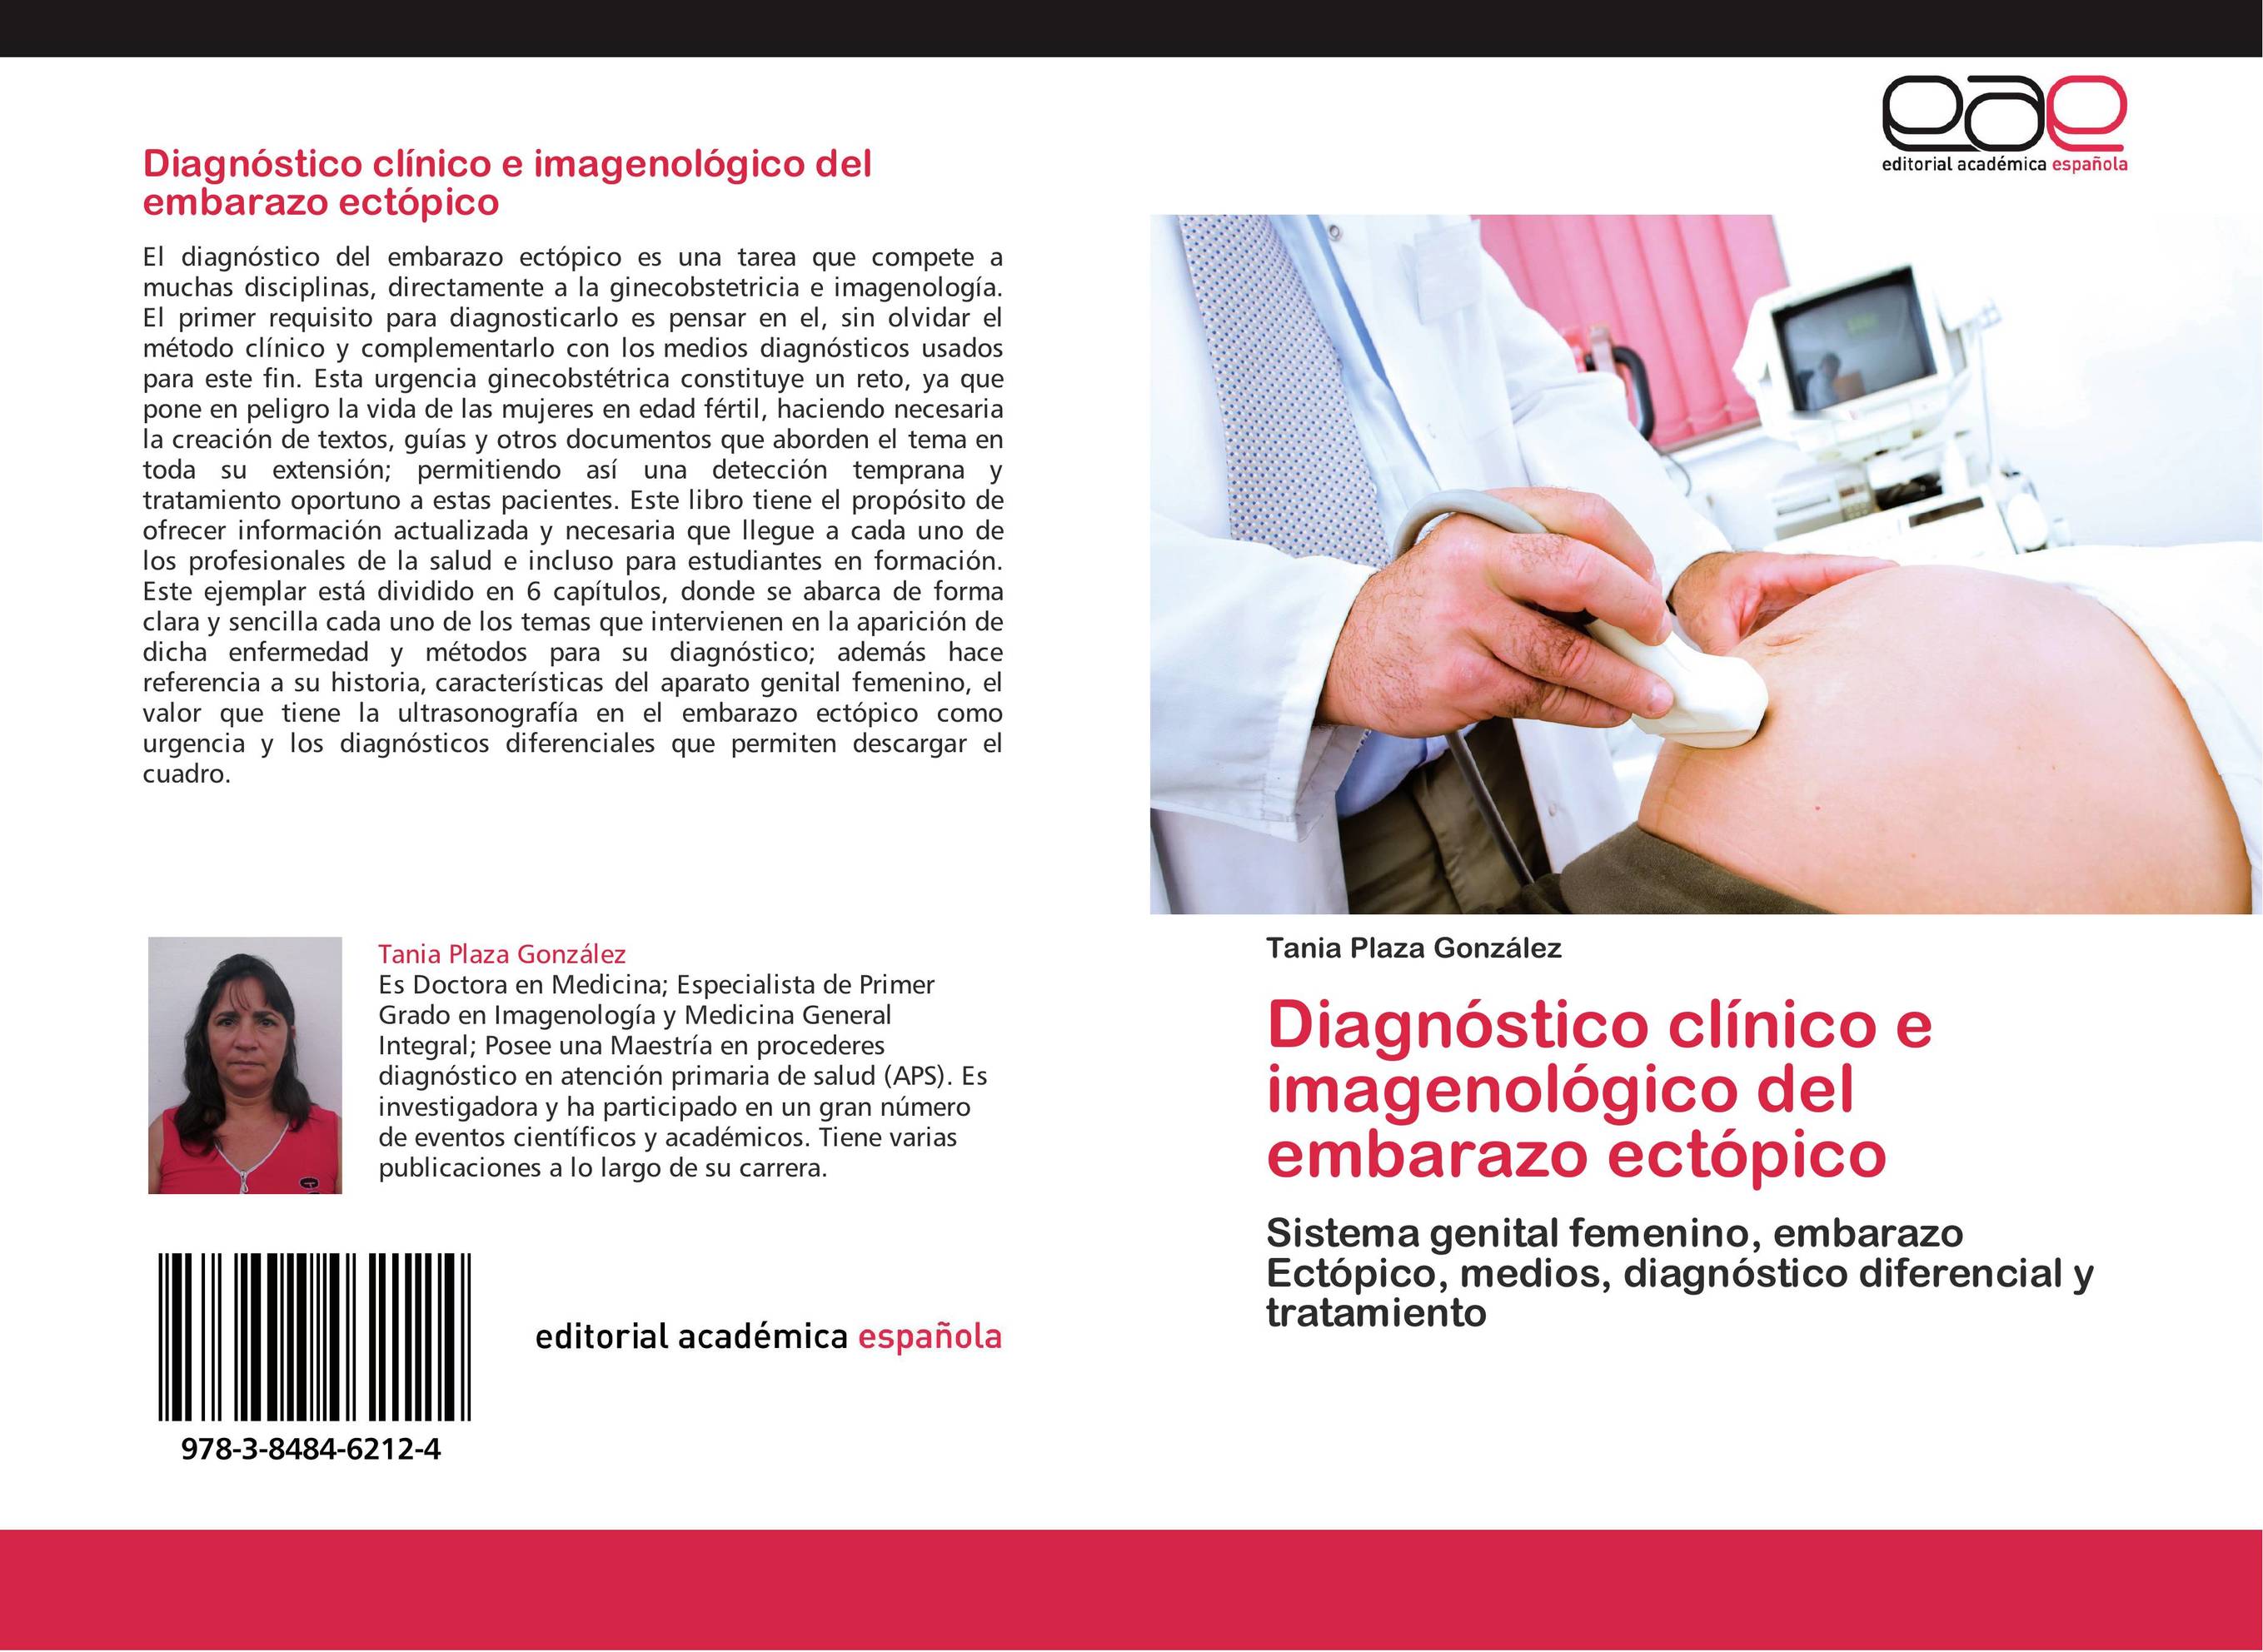 Diagnóstico clínico e imagenológico del embarazo ectópico